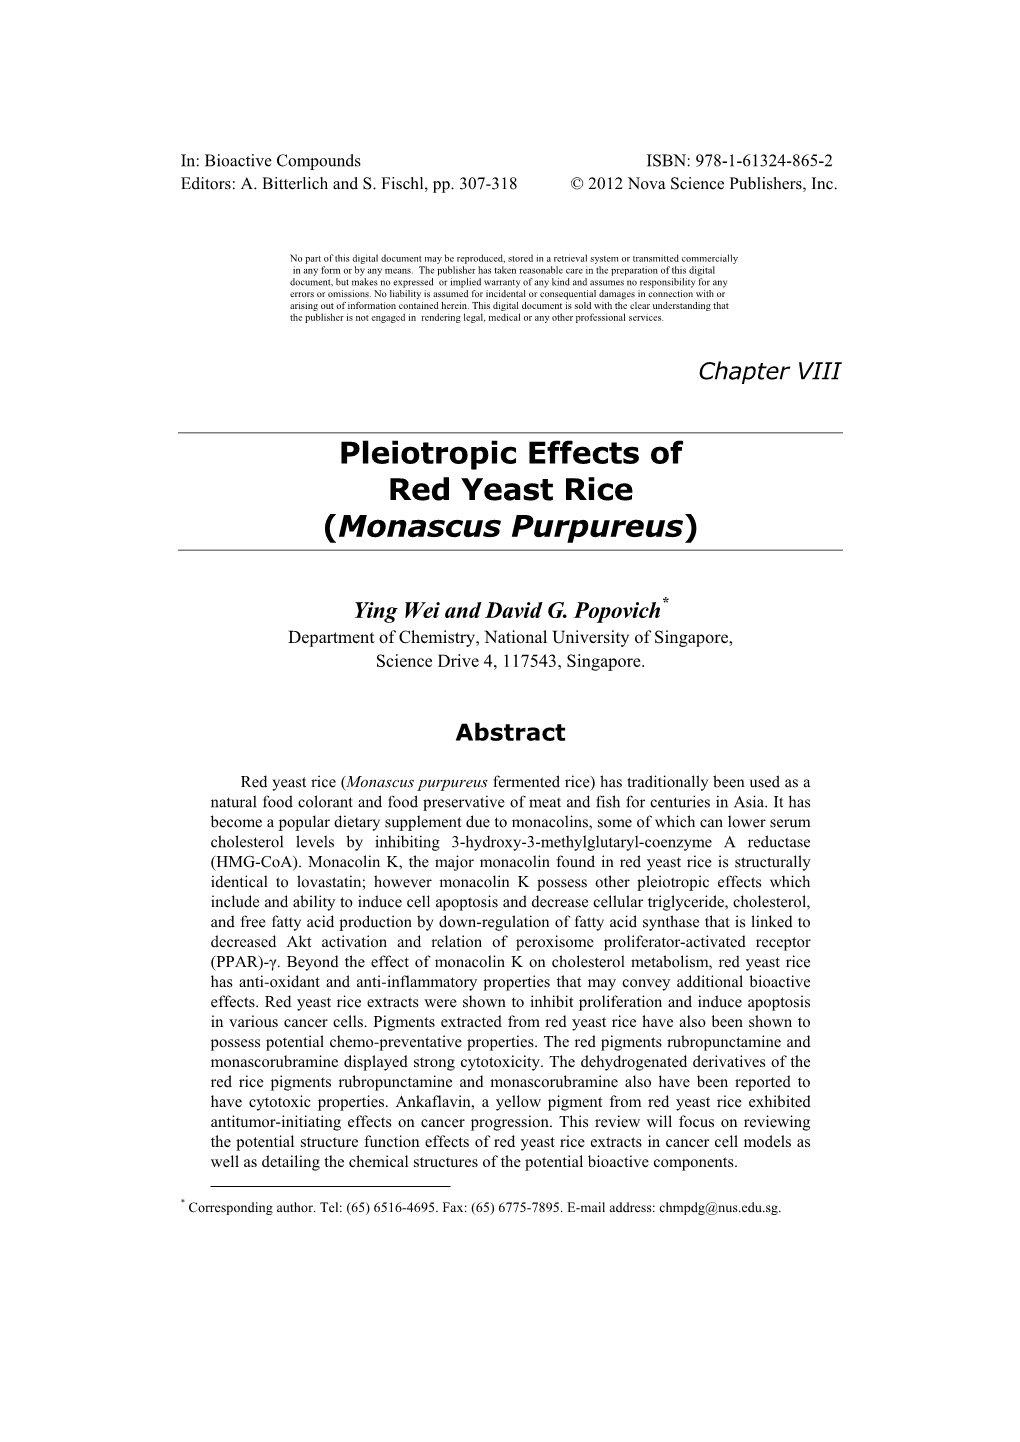 Pleiotropic Effects of Red Yeast Rice (Monascus Purpureus)